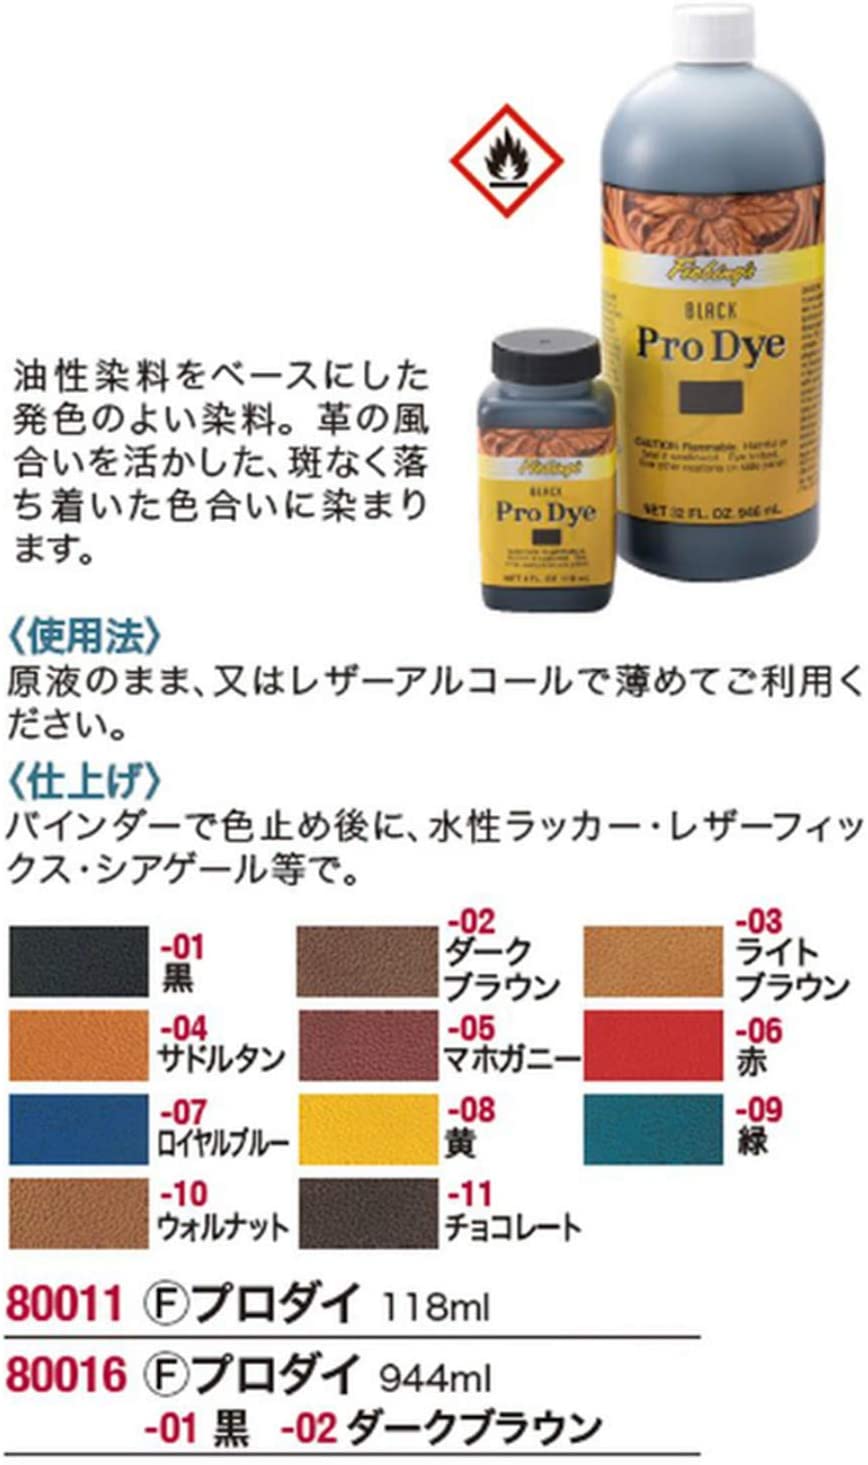 Fiebings Pro Dye Walnut, 4 oz – Binkt